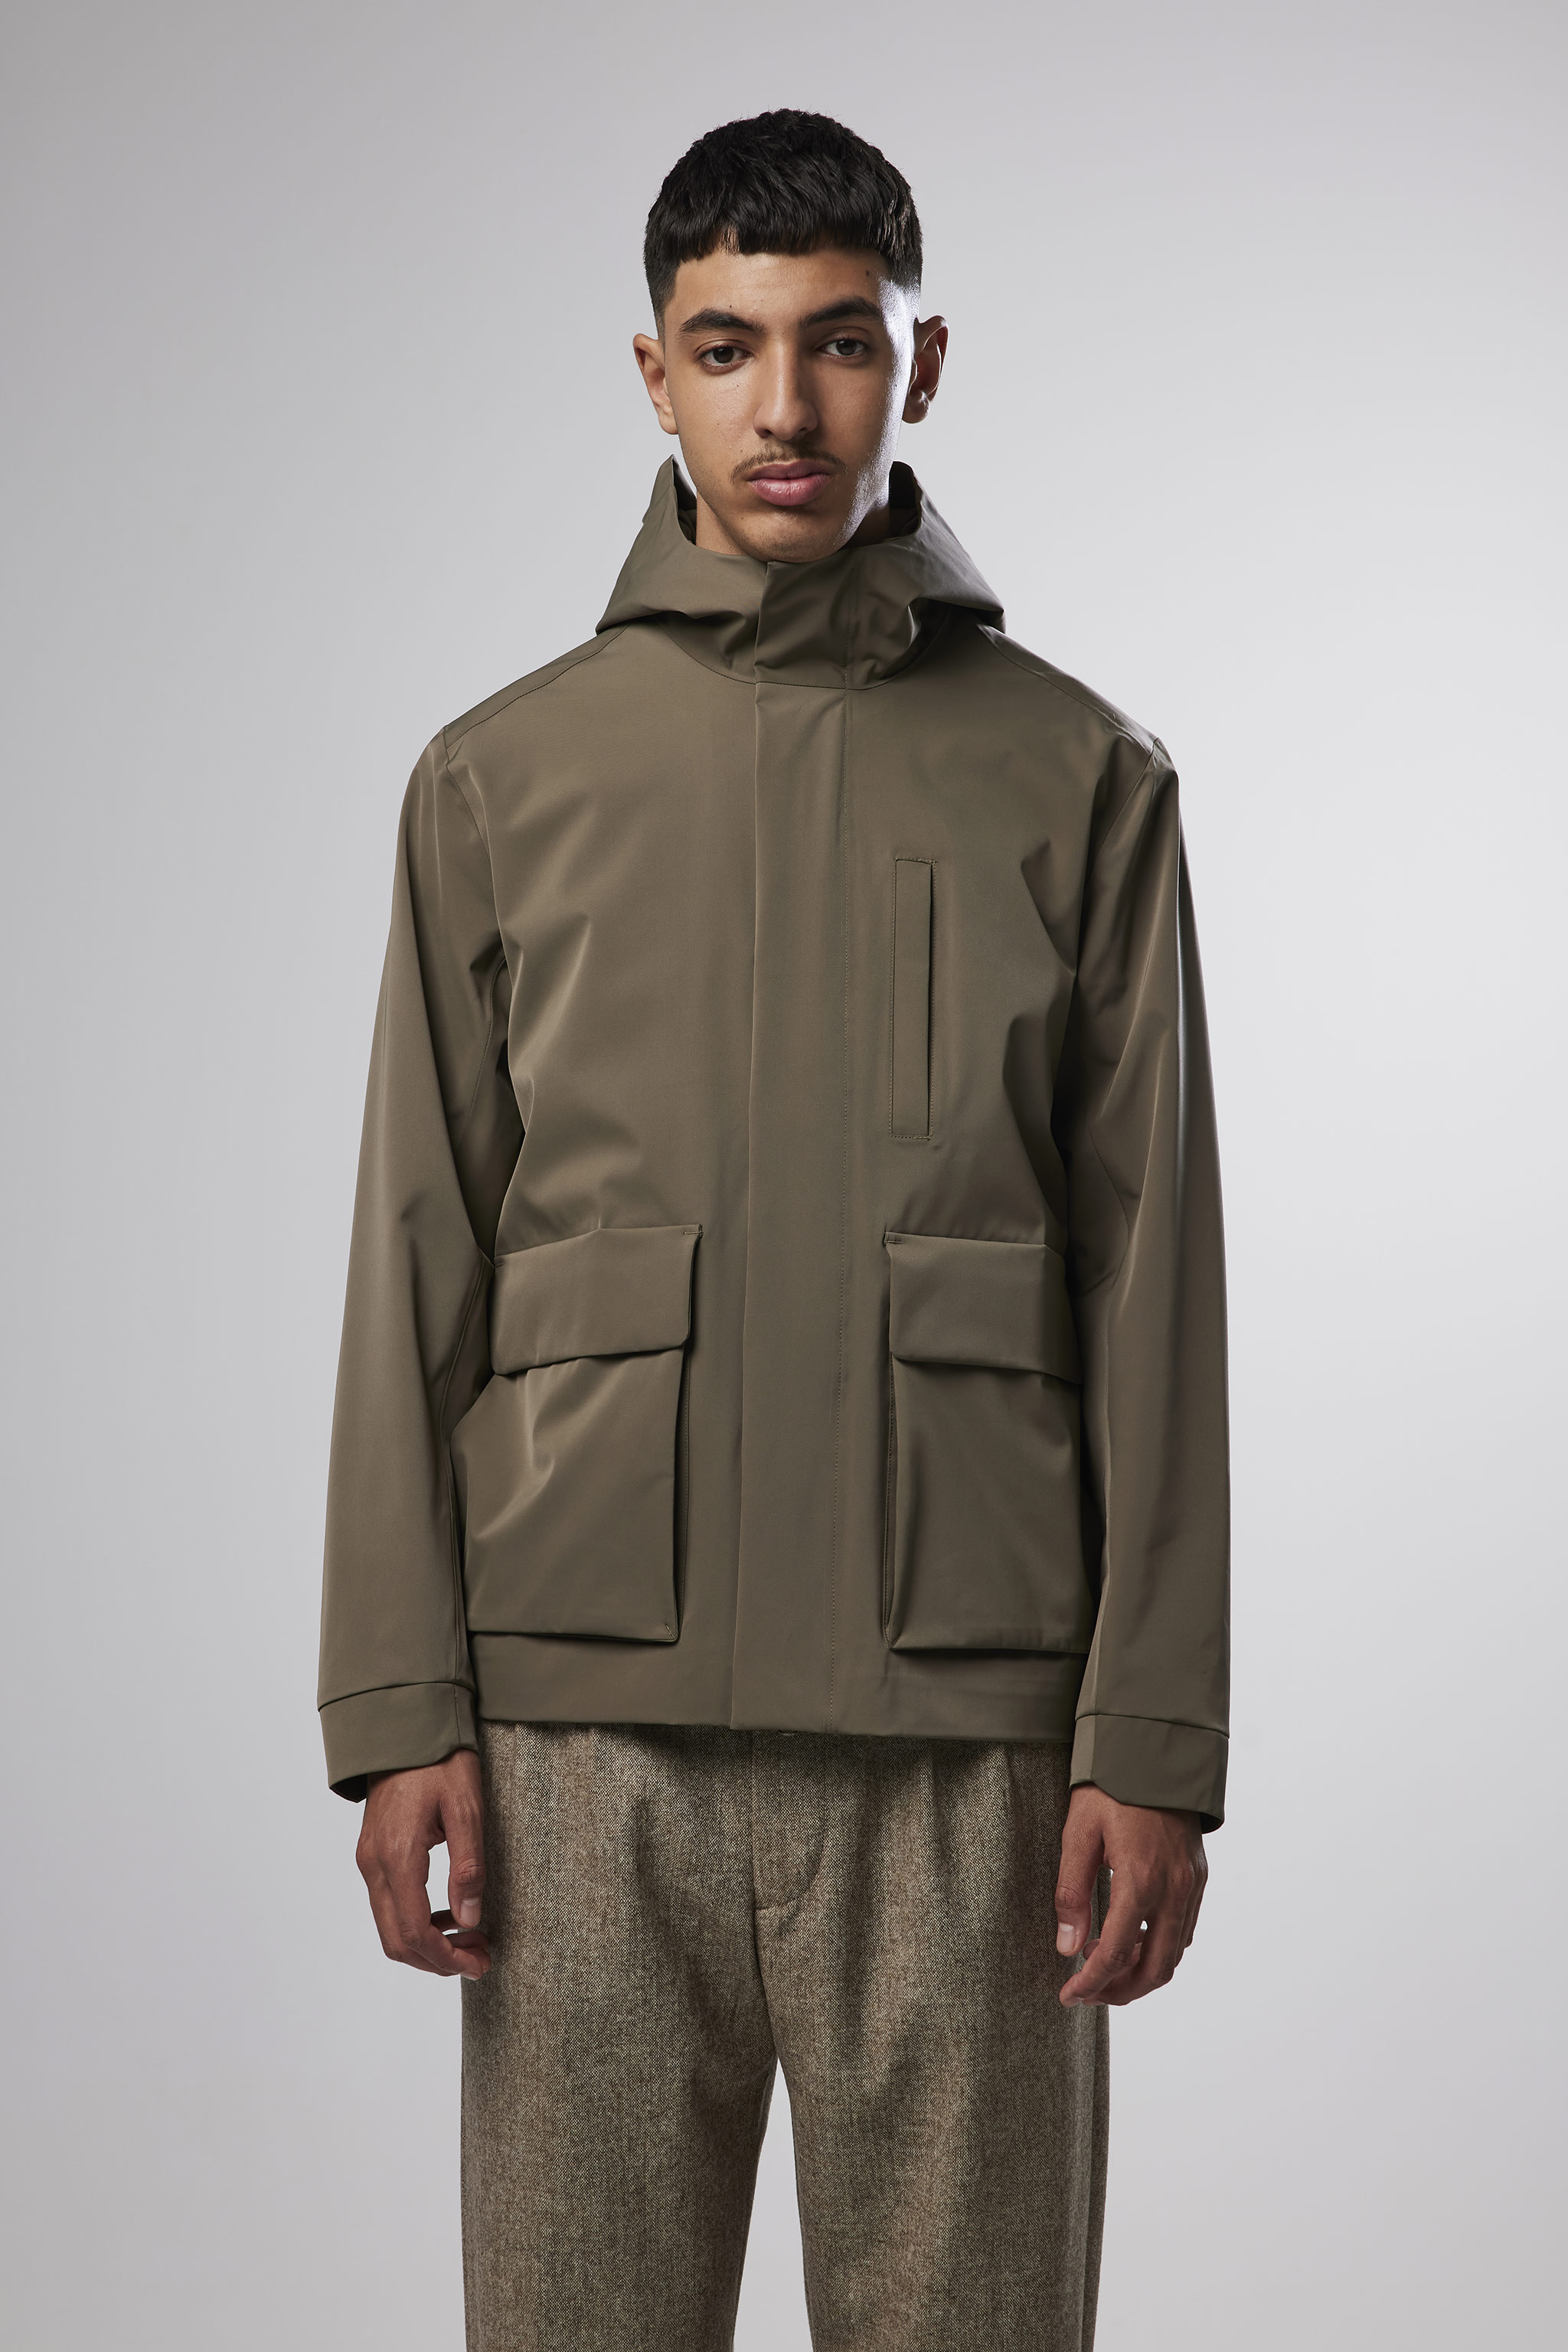 Beck 8240 men's jacket - Grey - Buy online at NN.07®